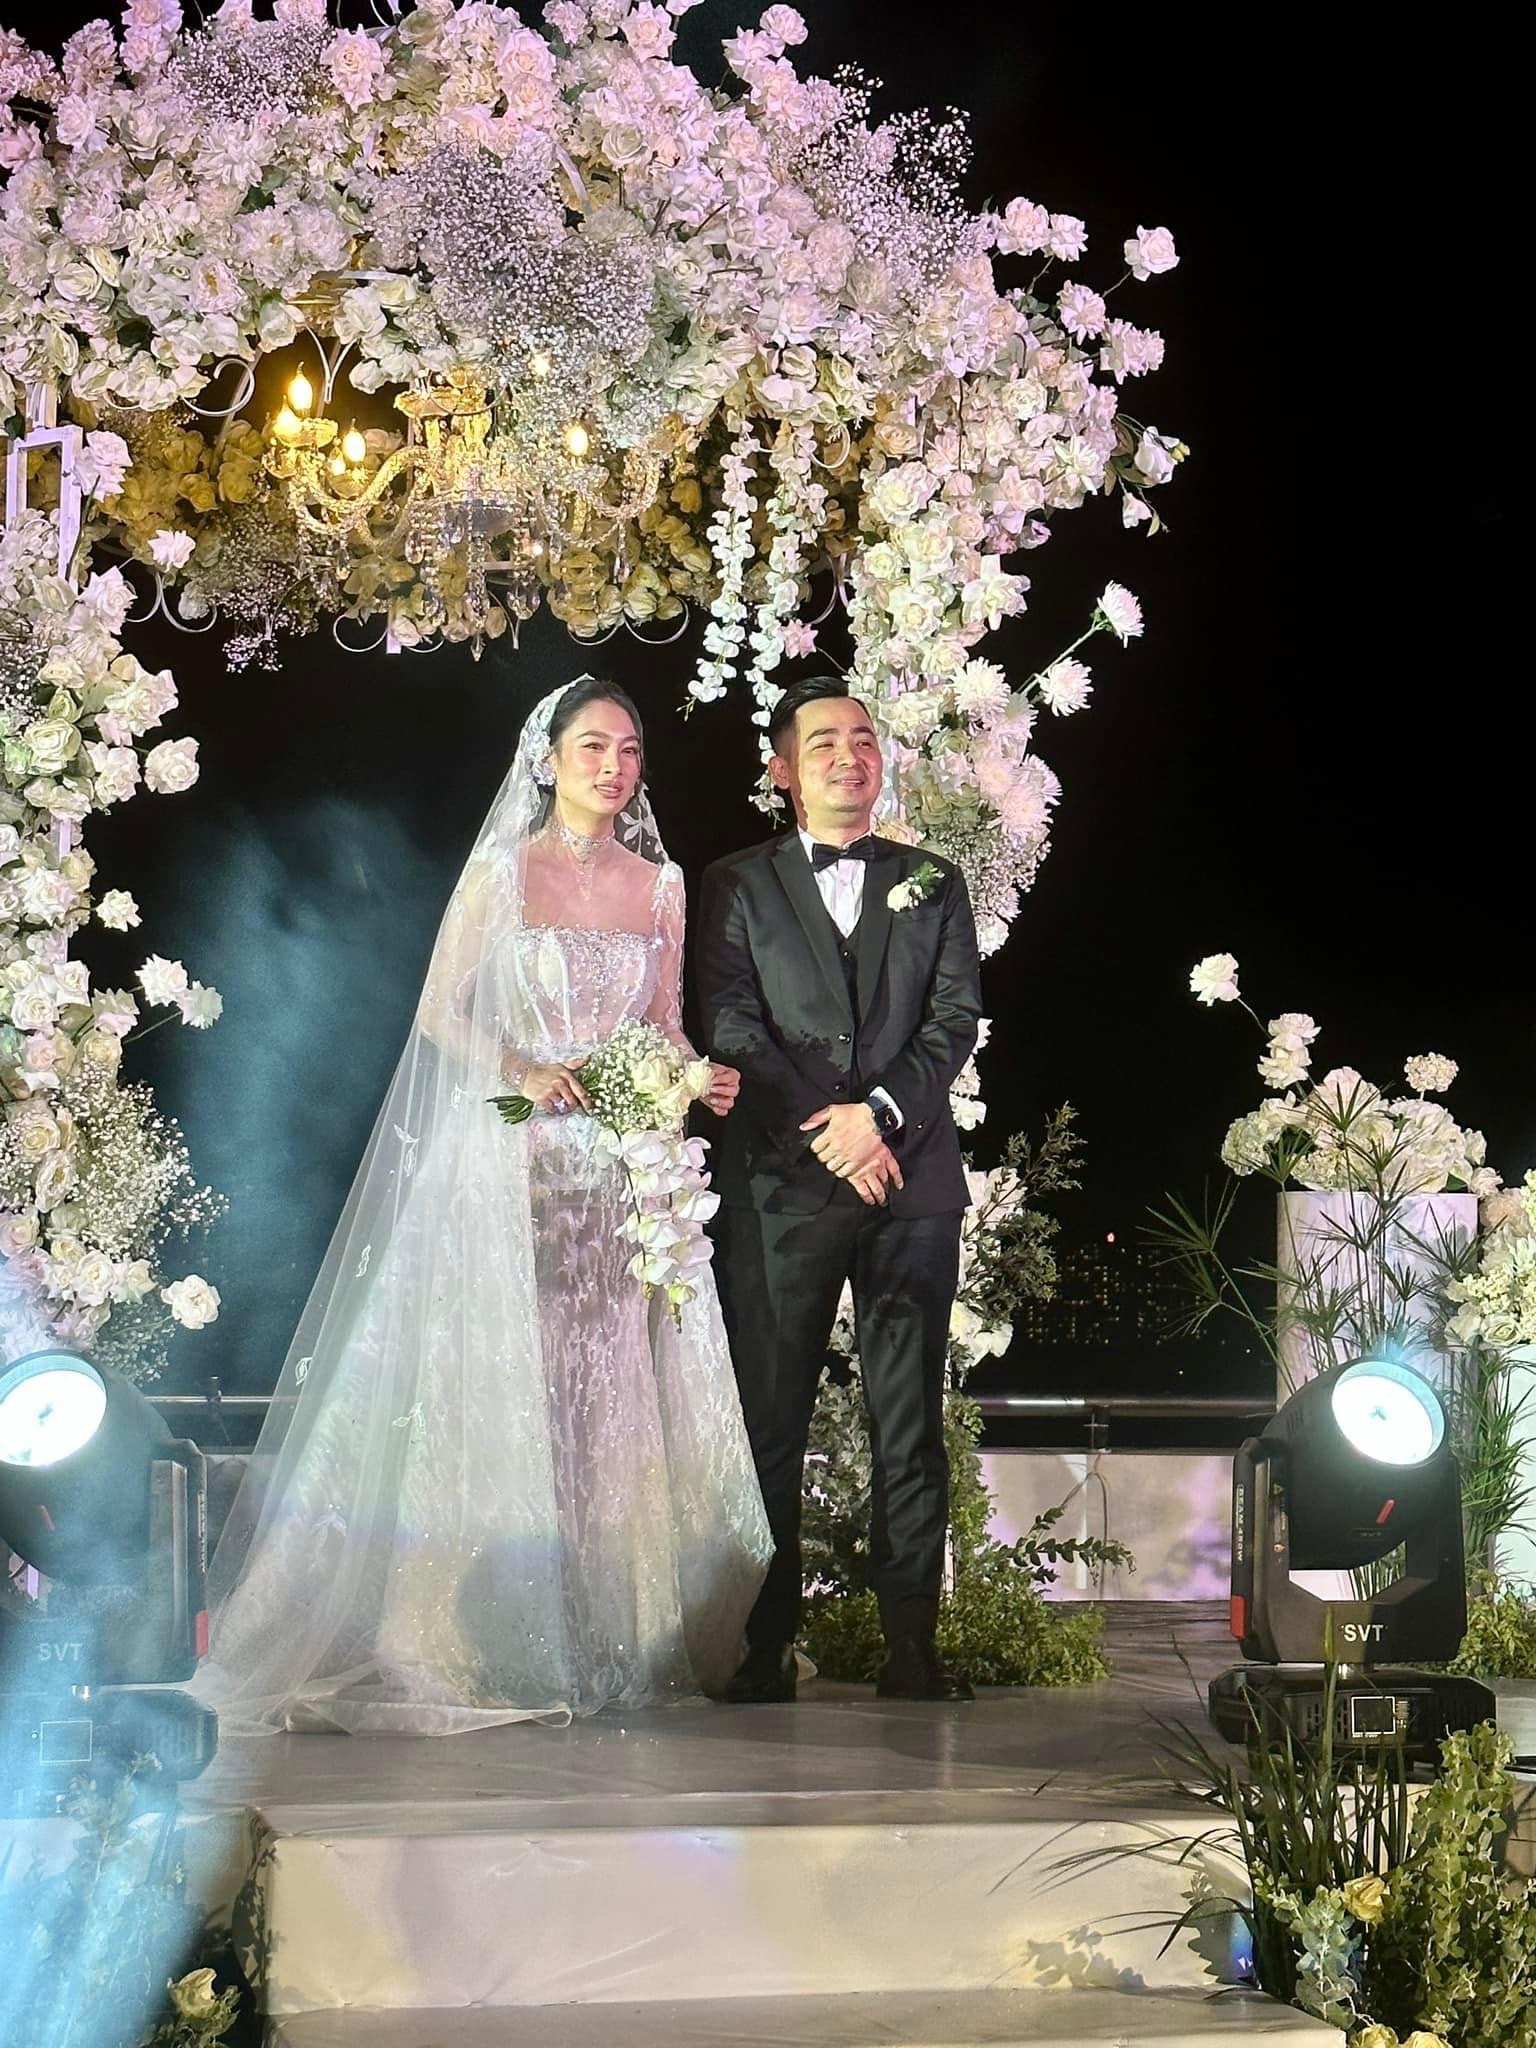 Cát Phượng, Hồng Vân cùng dàn sao đổ bộ đám cưới của đạo diễn Vbiz - Ảnh 9.